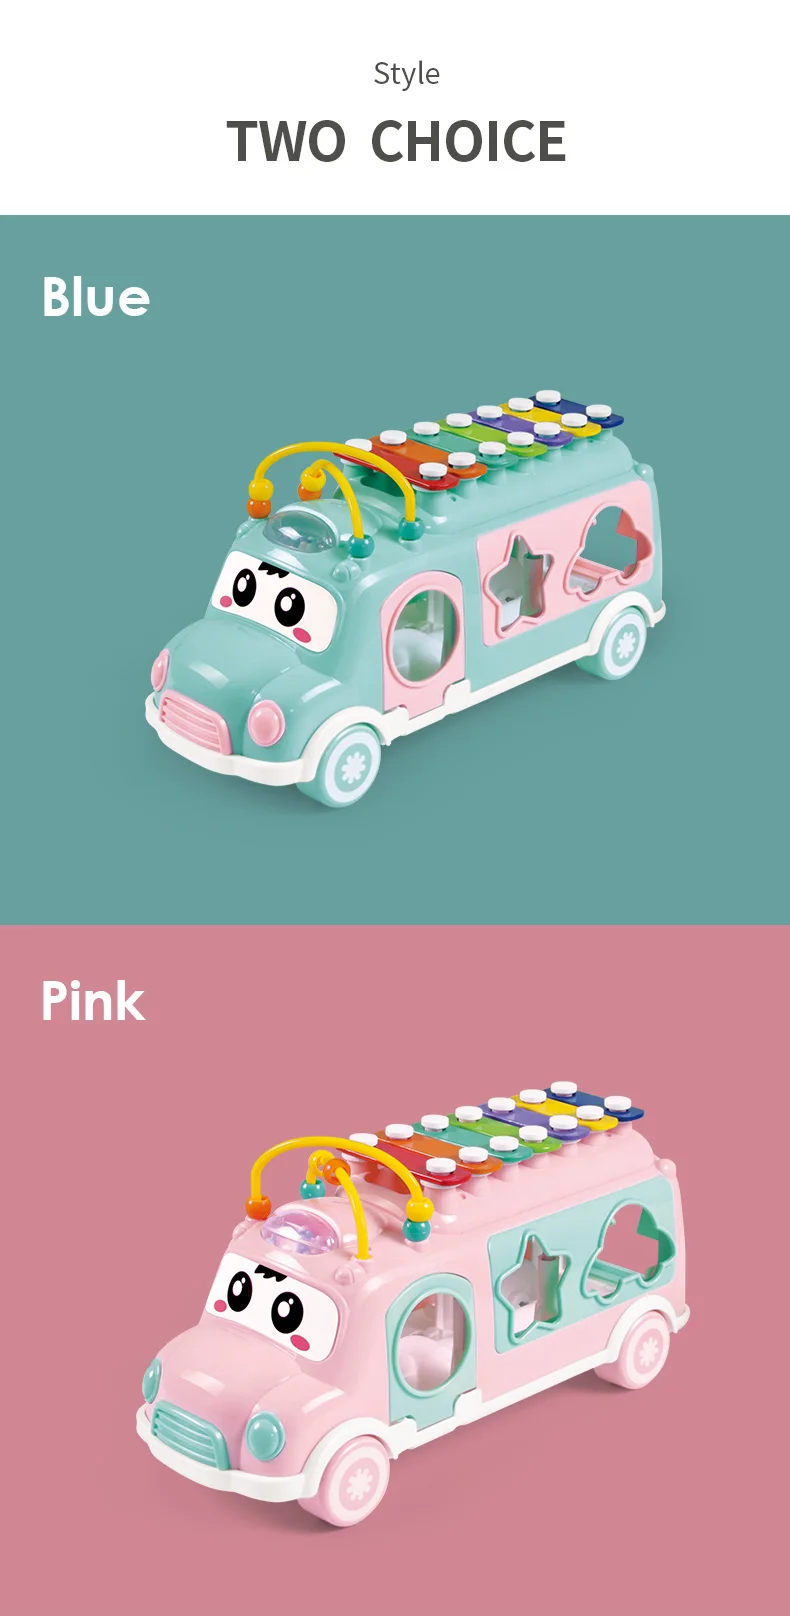 Huanger мультфильм музыкальный автобус детские игрушки ручной стук девочка мальчик погремушка развивающие для детей головоломки младенческой мобильный монтессориподарок